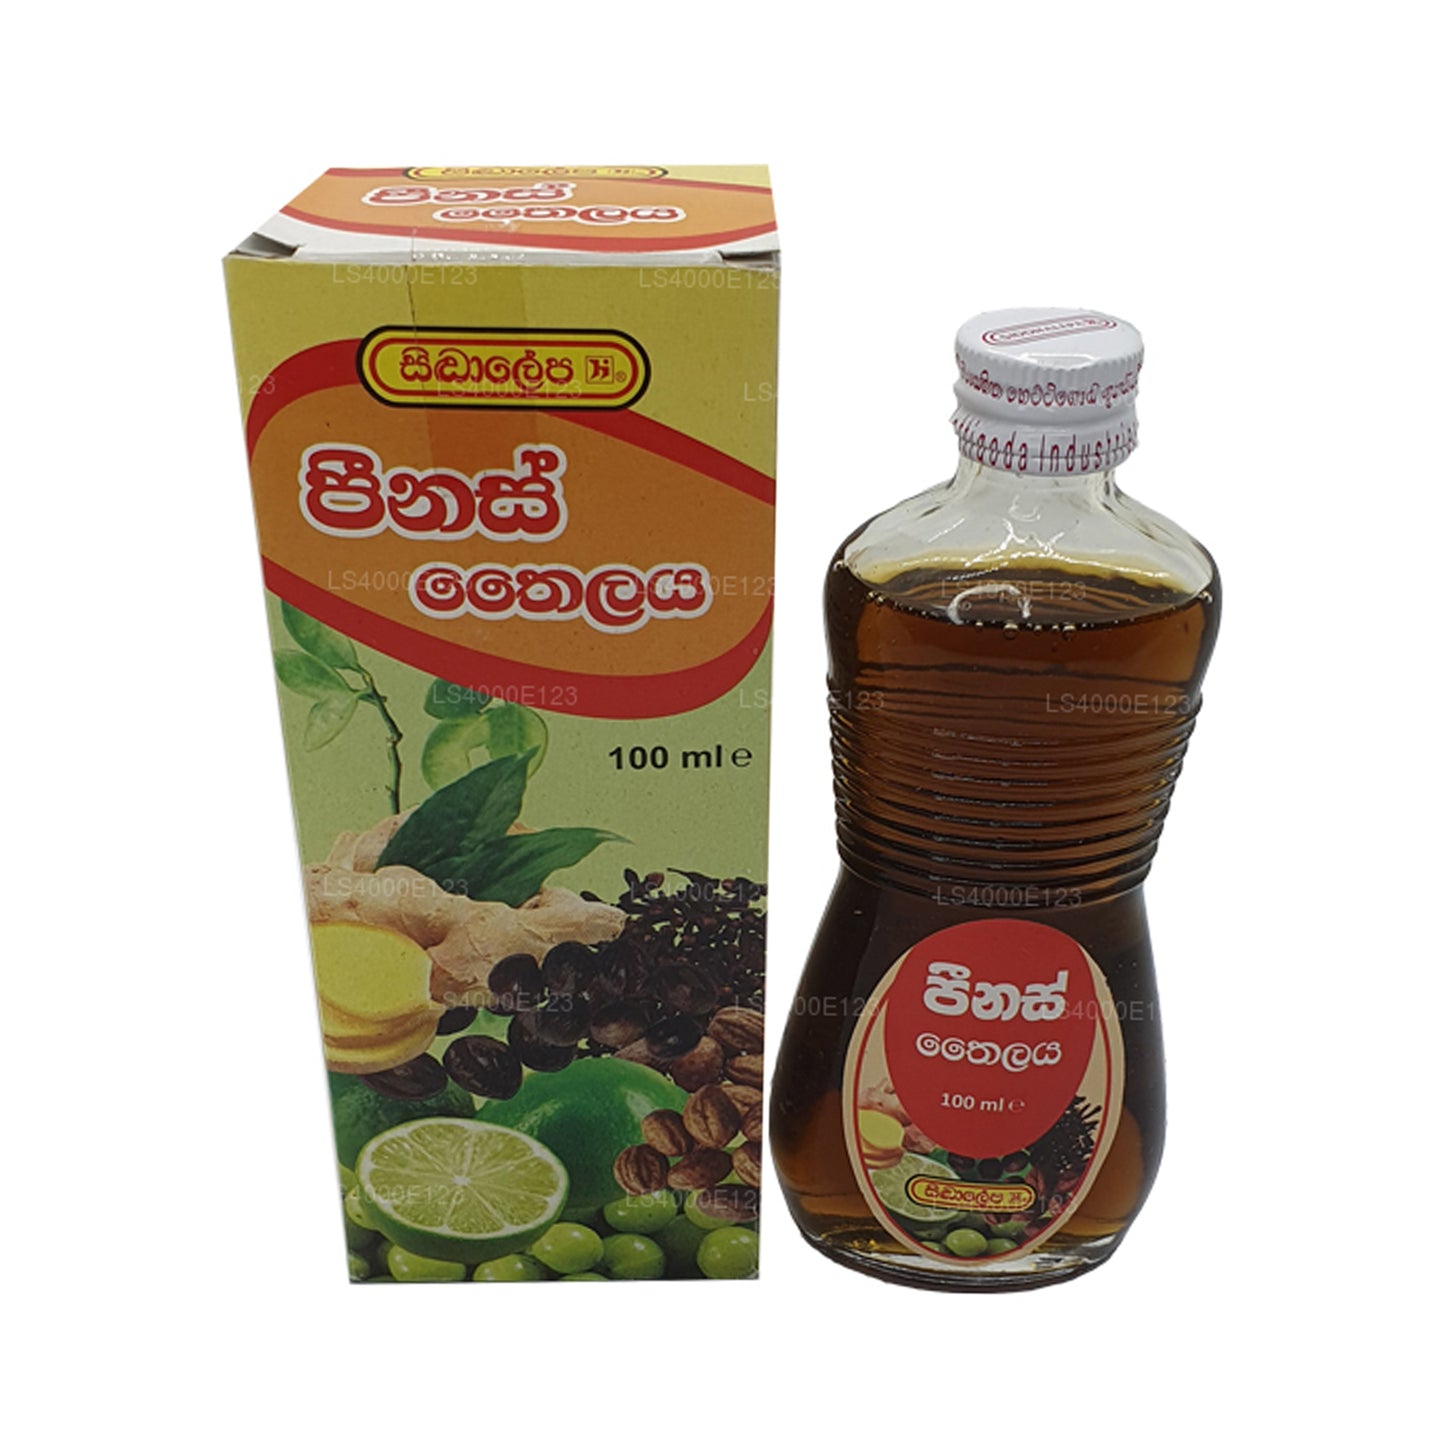 Siddhalepa Peenas Öl (30 ml)